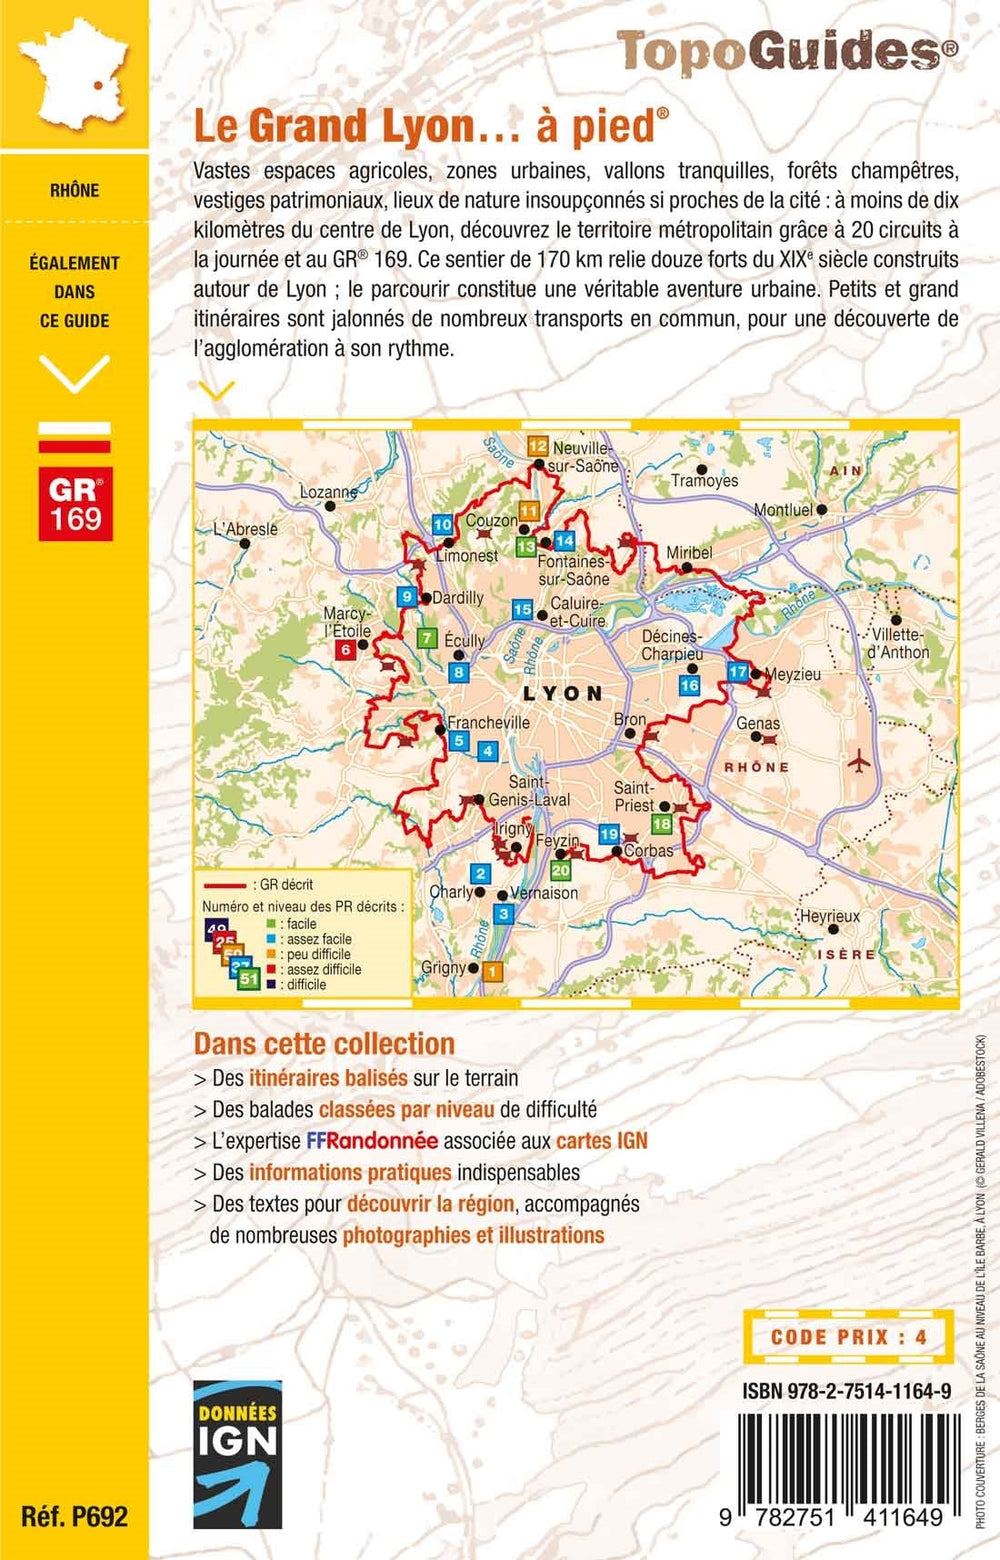 Topoguide de randonnée - Le Grand Lyon à pied | FFR guide de randonnée FFR - Fédération Française de Randonnée 